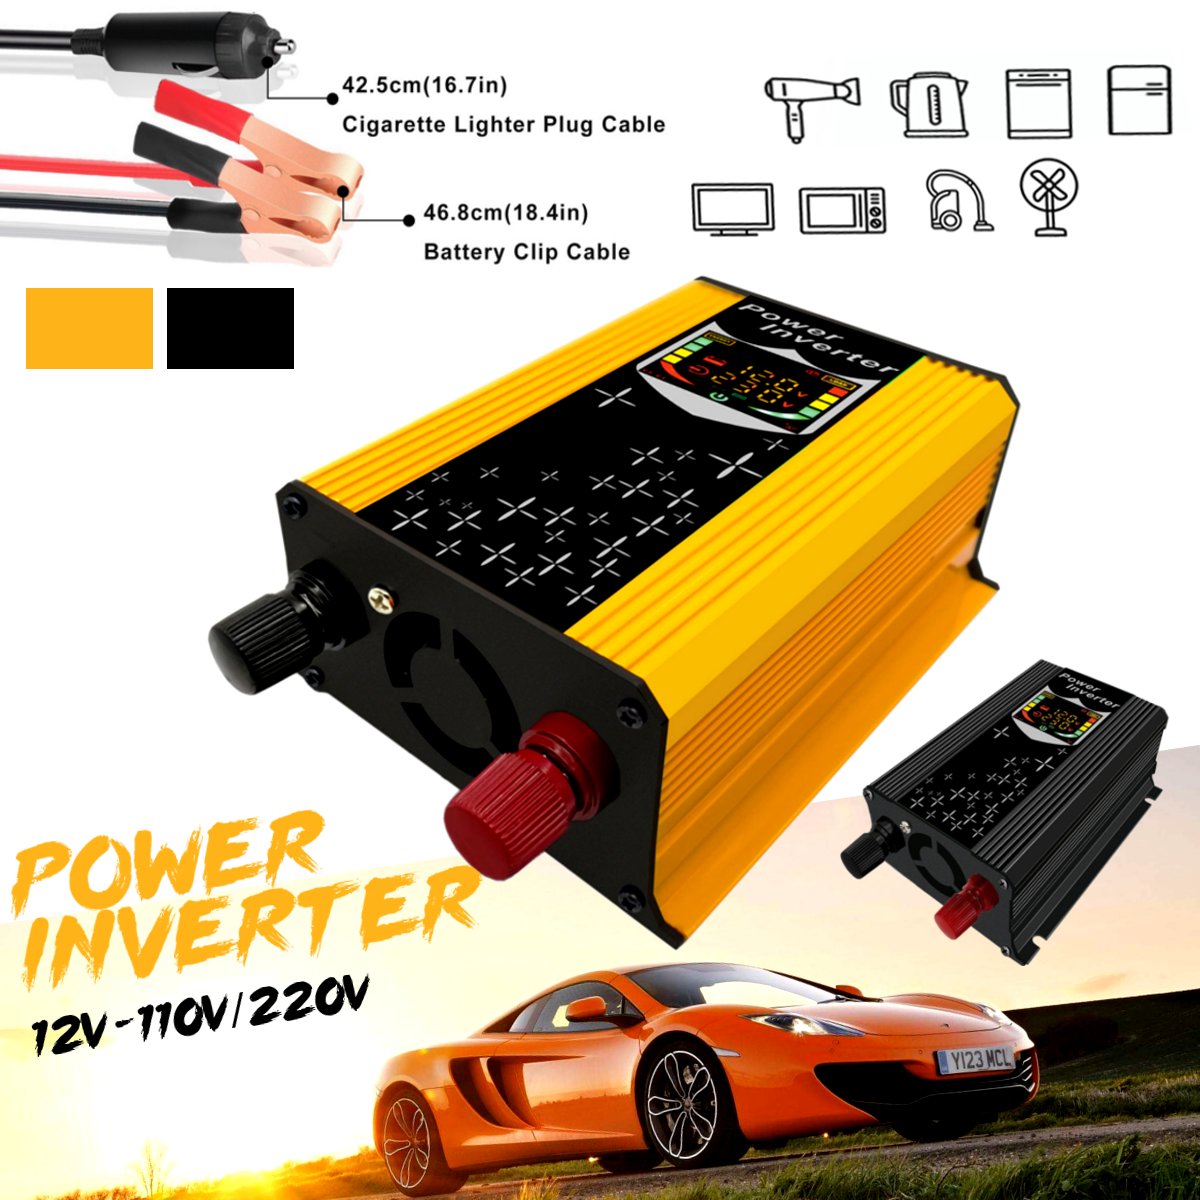 12V-110V220V-Dispaly-Inverter-450W-Power-Inverter-Car-Modified-Sine-Wave-Converter-Solar-Power-Charg-1478442-1